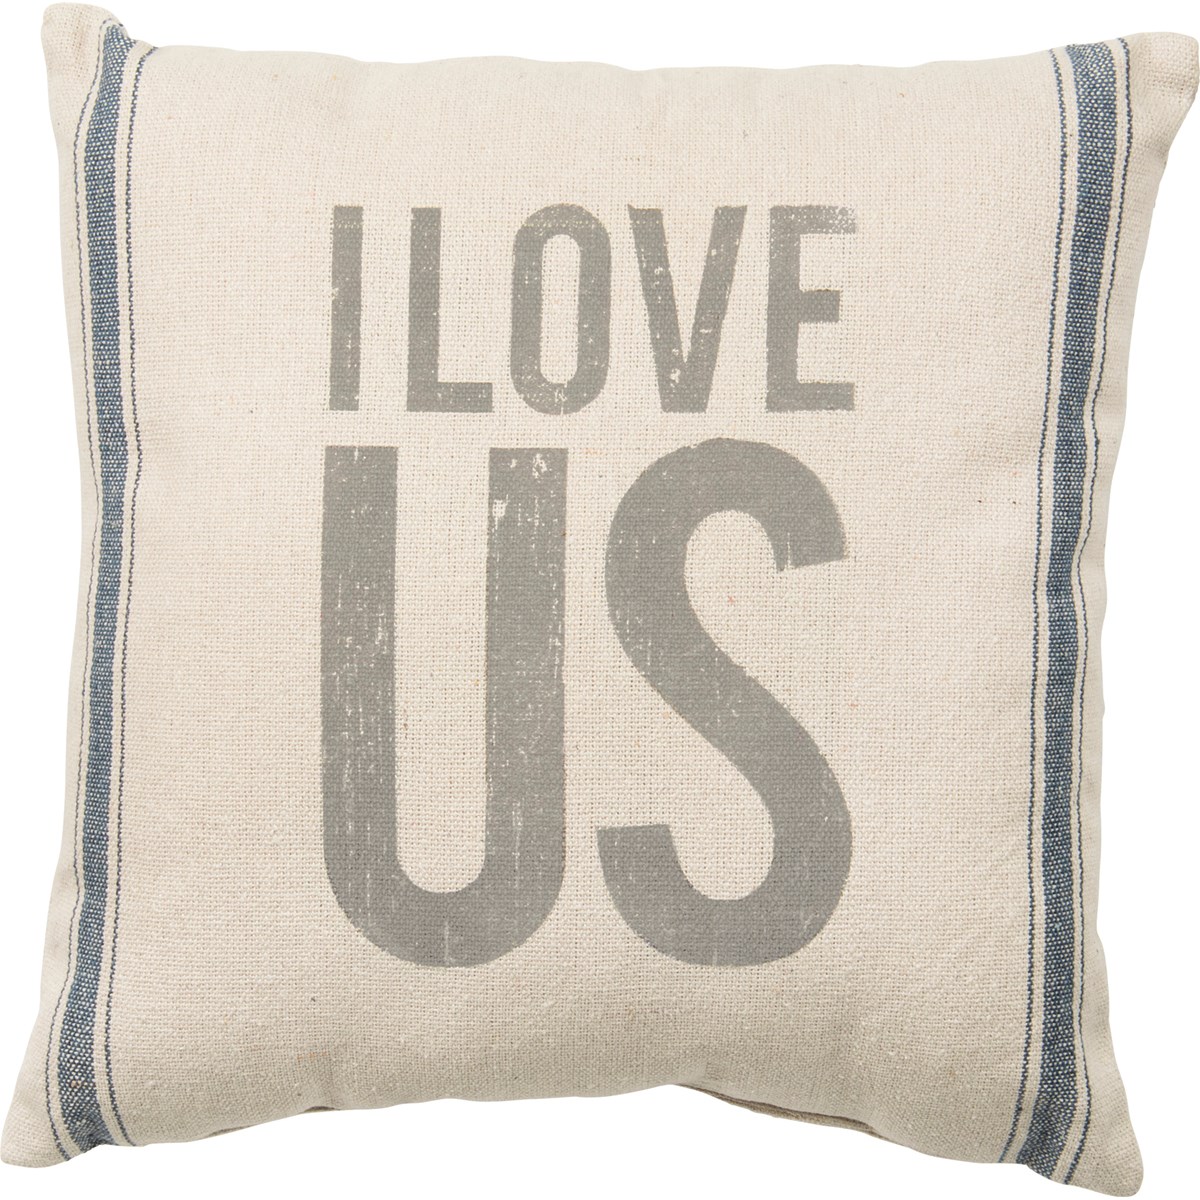 I Love Us Pillow - Cotton, Zipper